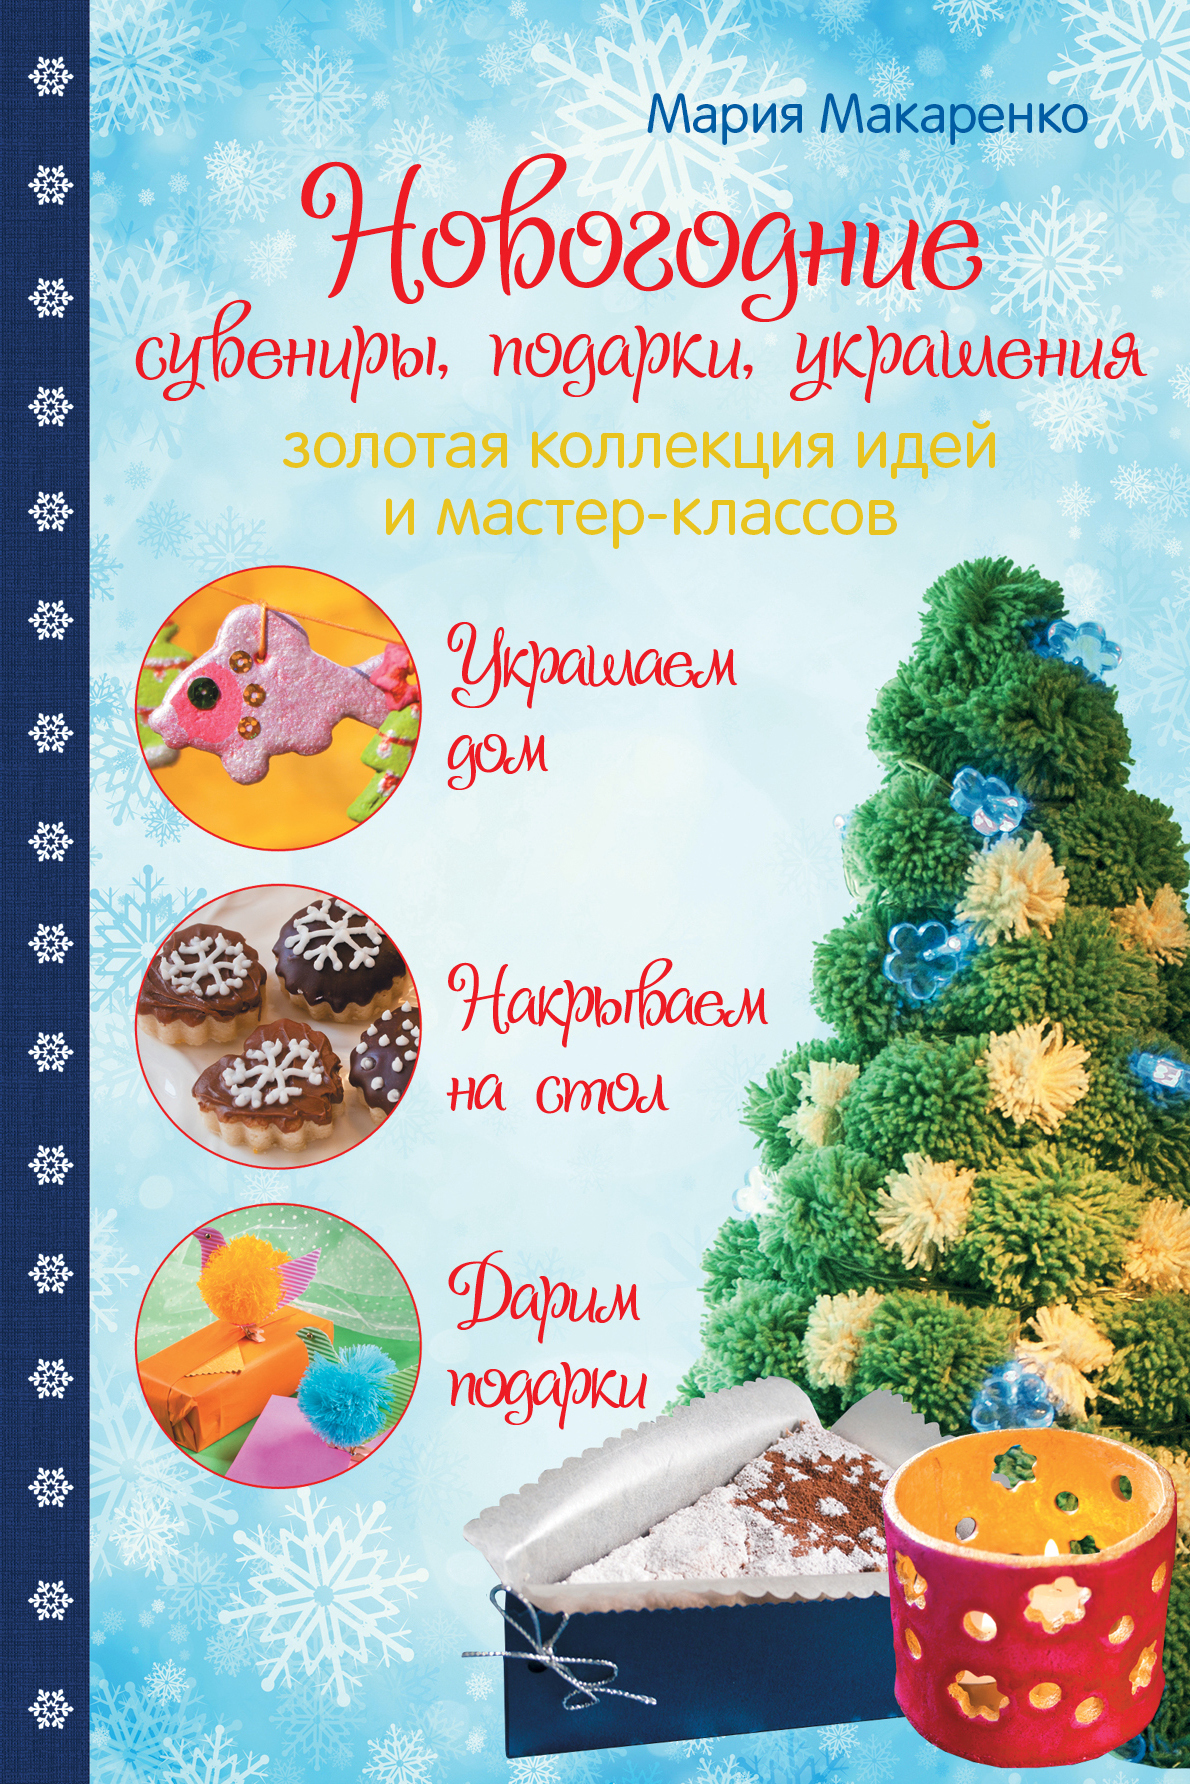 В Ханты-Мансийске научат делать новогодние подарки